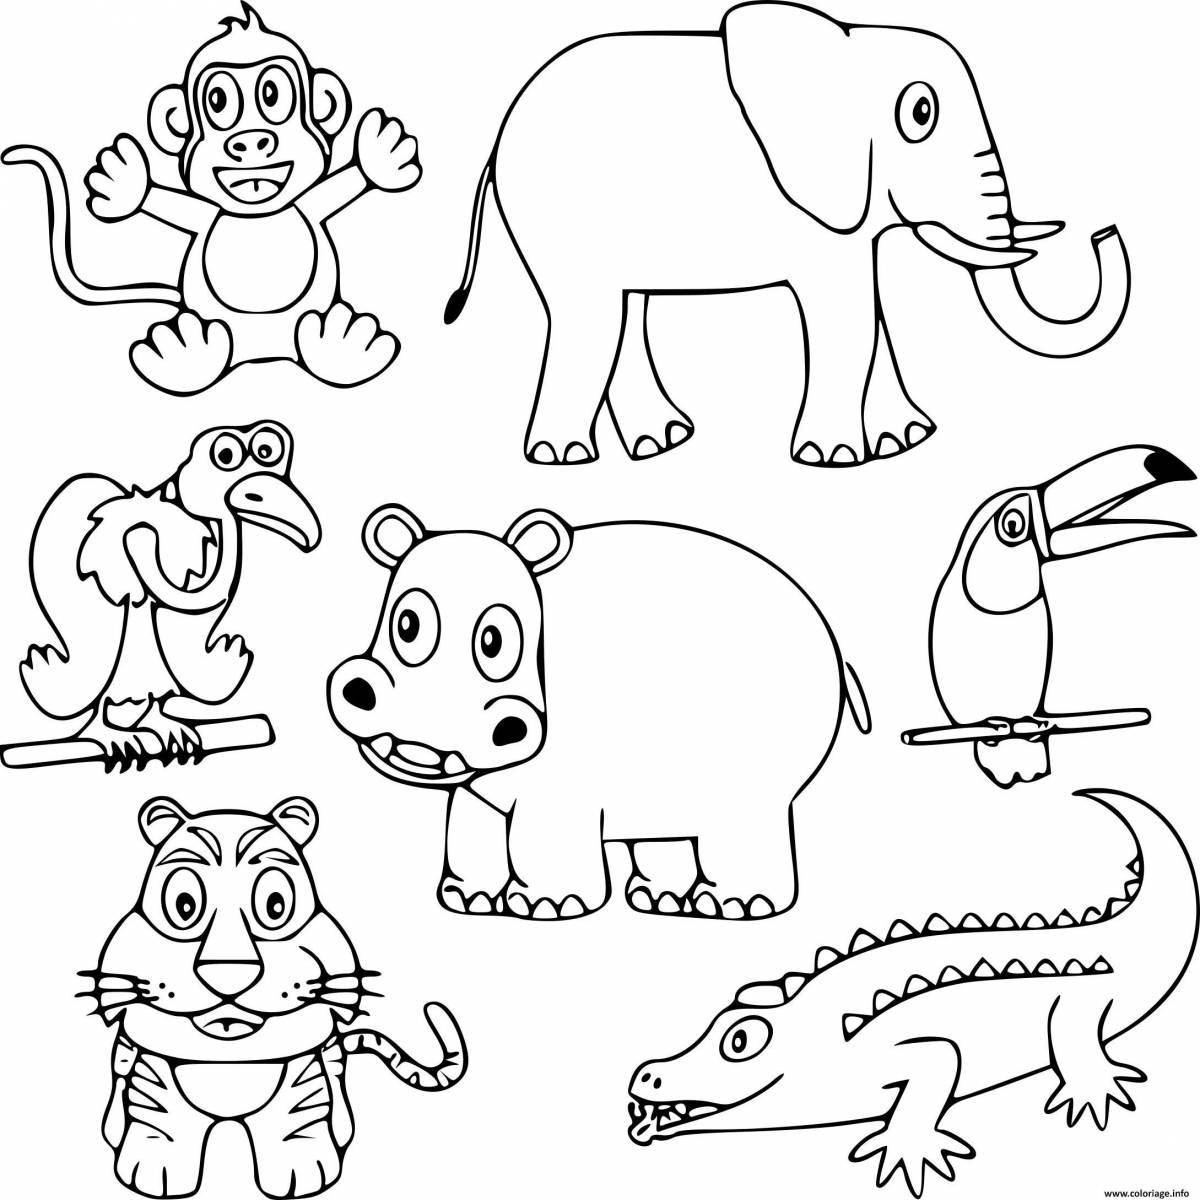 Креативная раскраска африканских животных для детей 4-5 лет